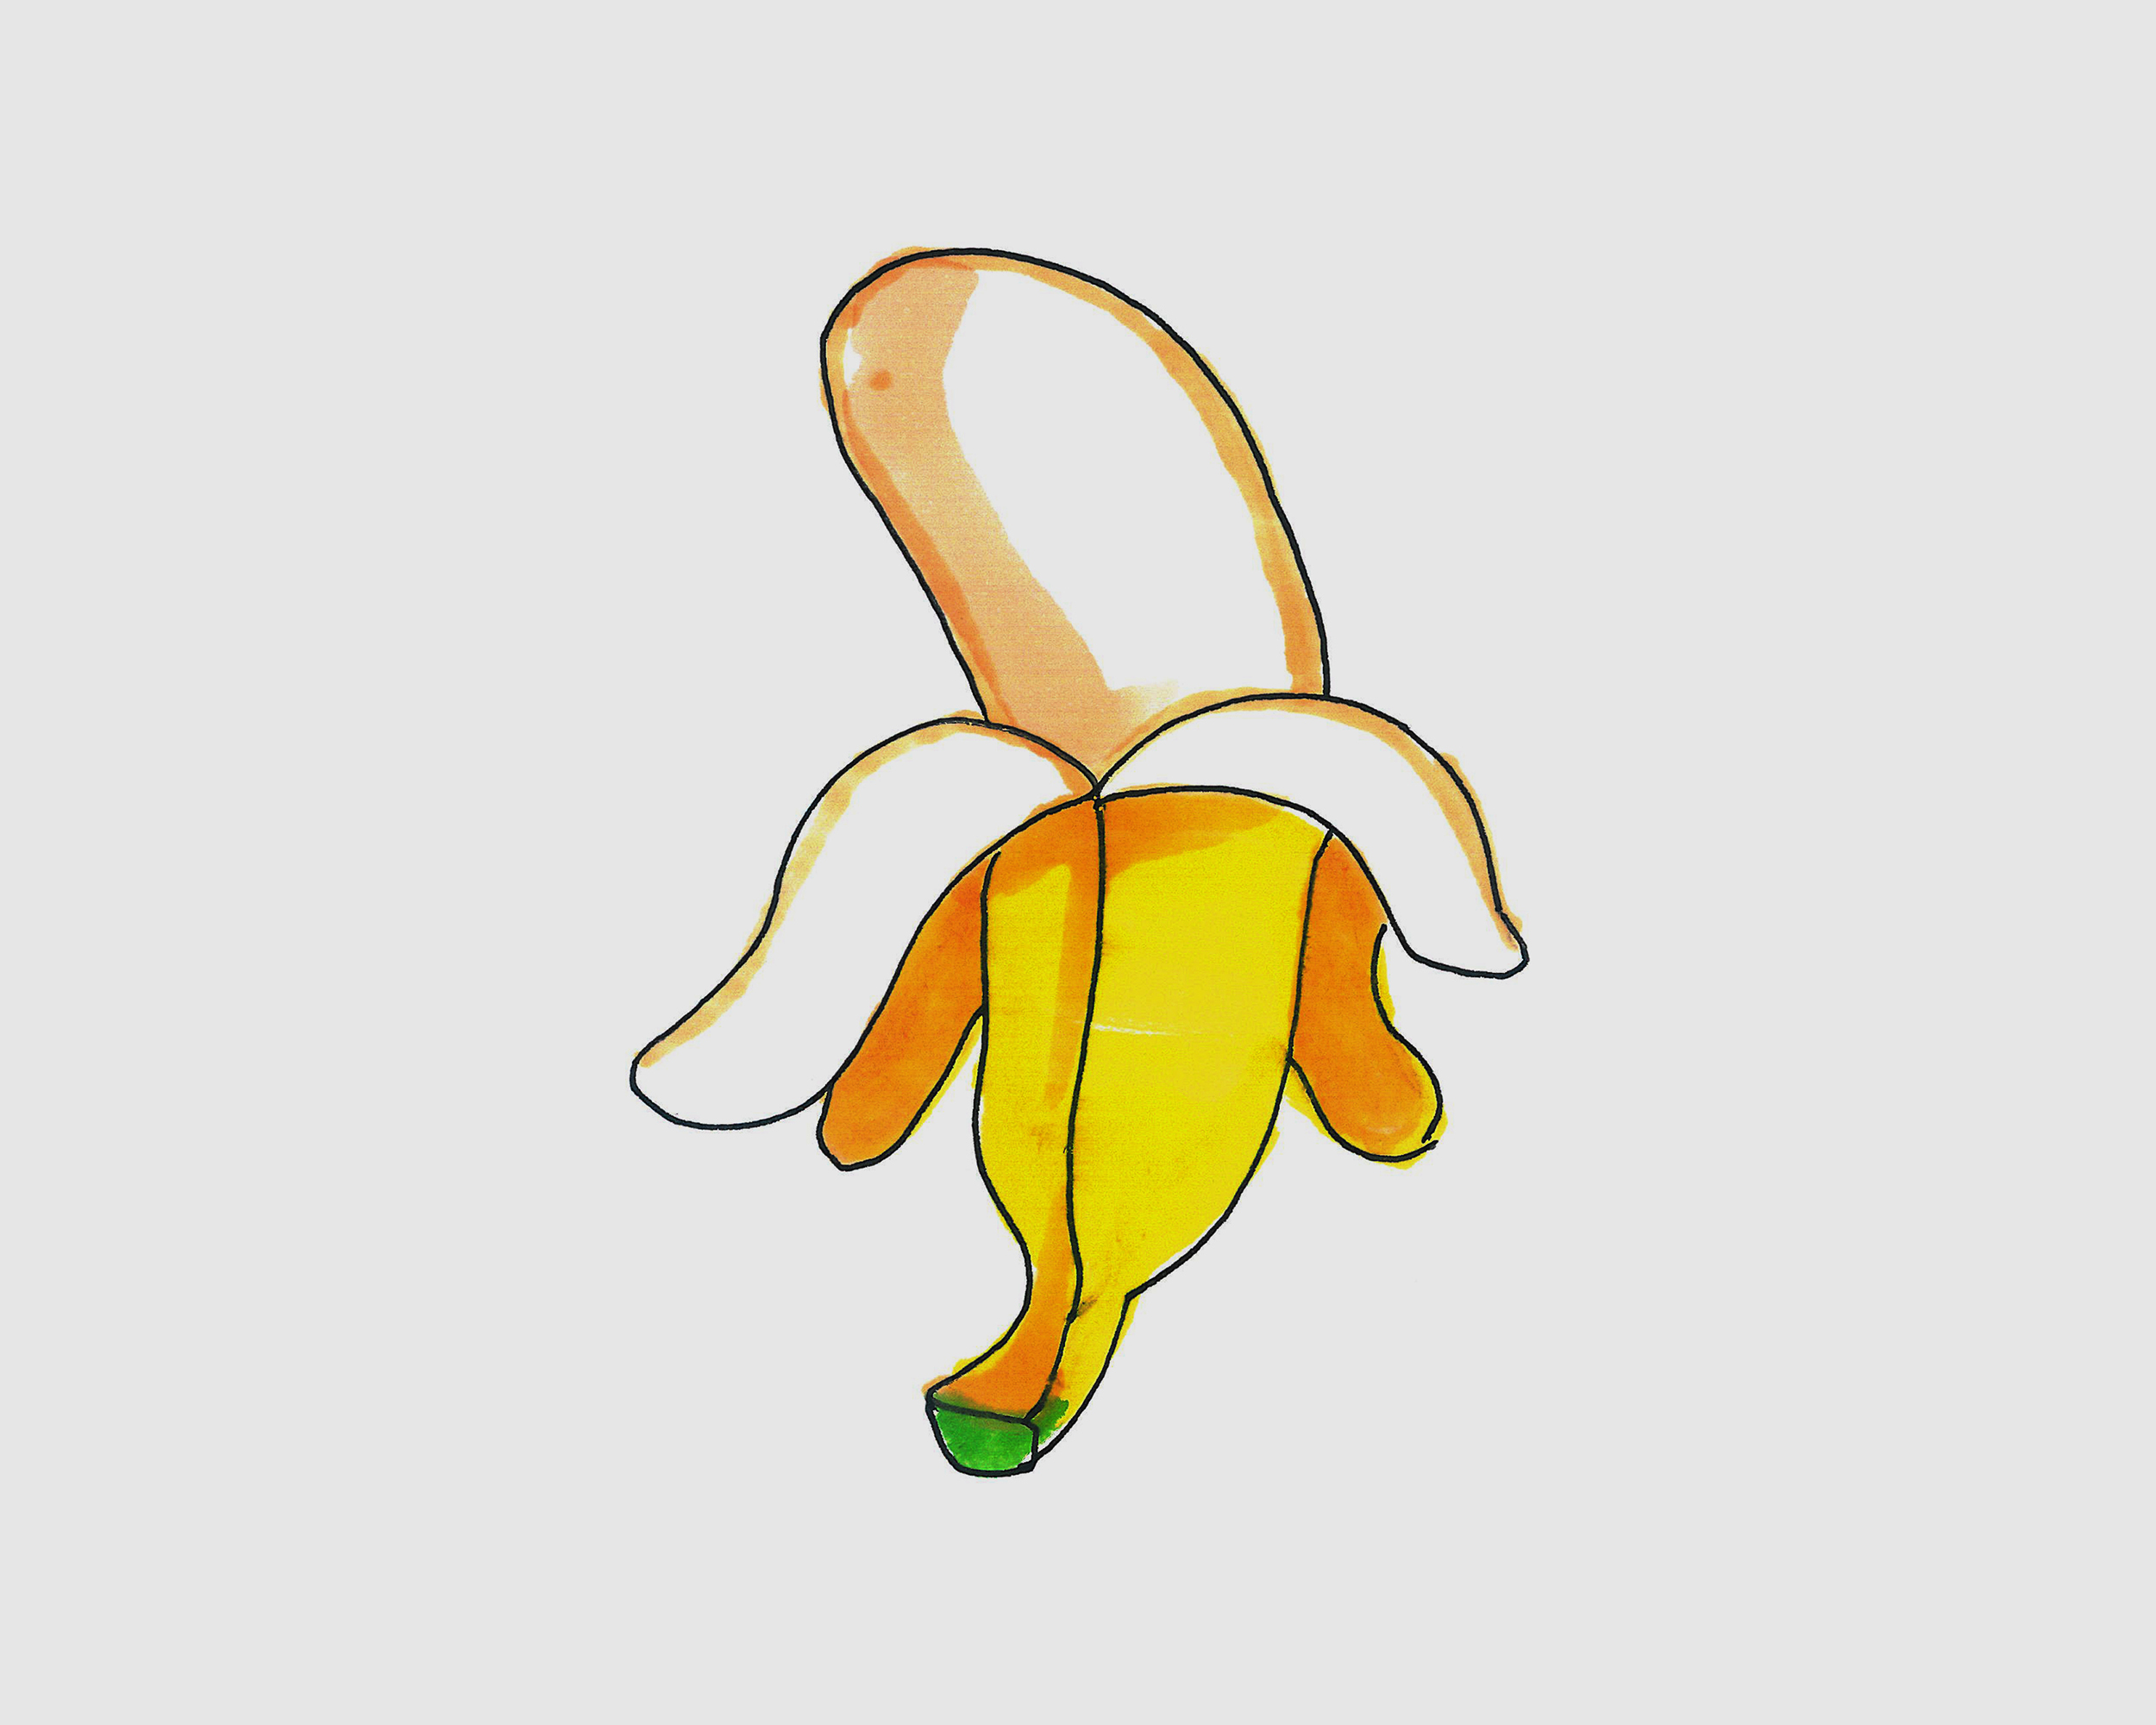 香蕉果卡通人物emo 向量例证. 插画 包括有 热带, 食物, 具体化, 人们, 意思号, 饮食, 设计 - 220542268